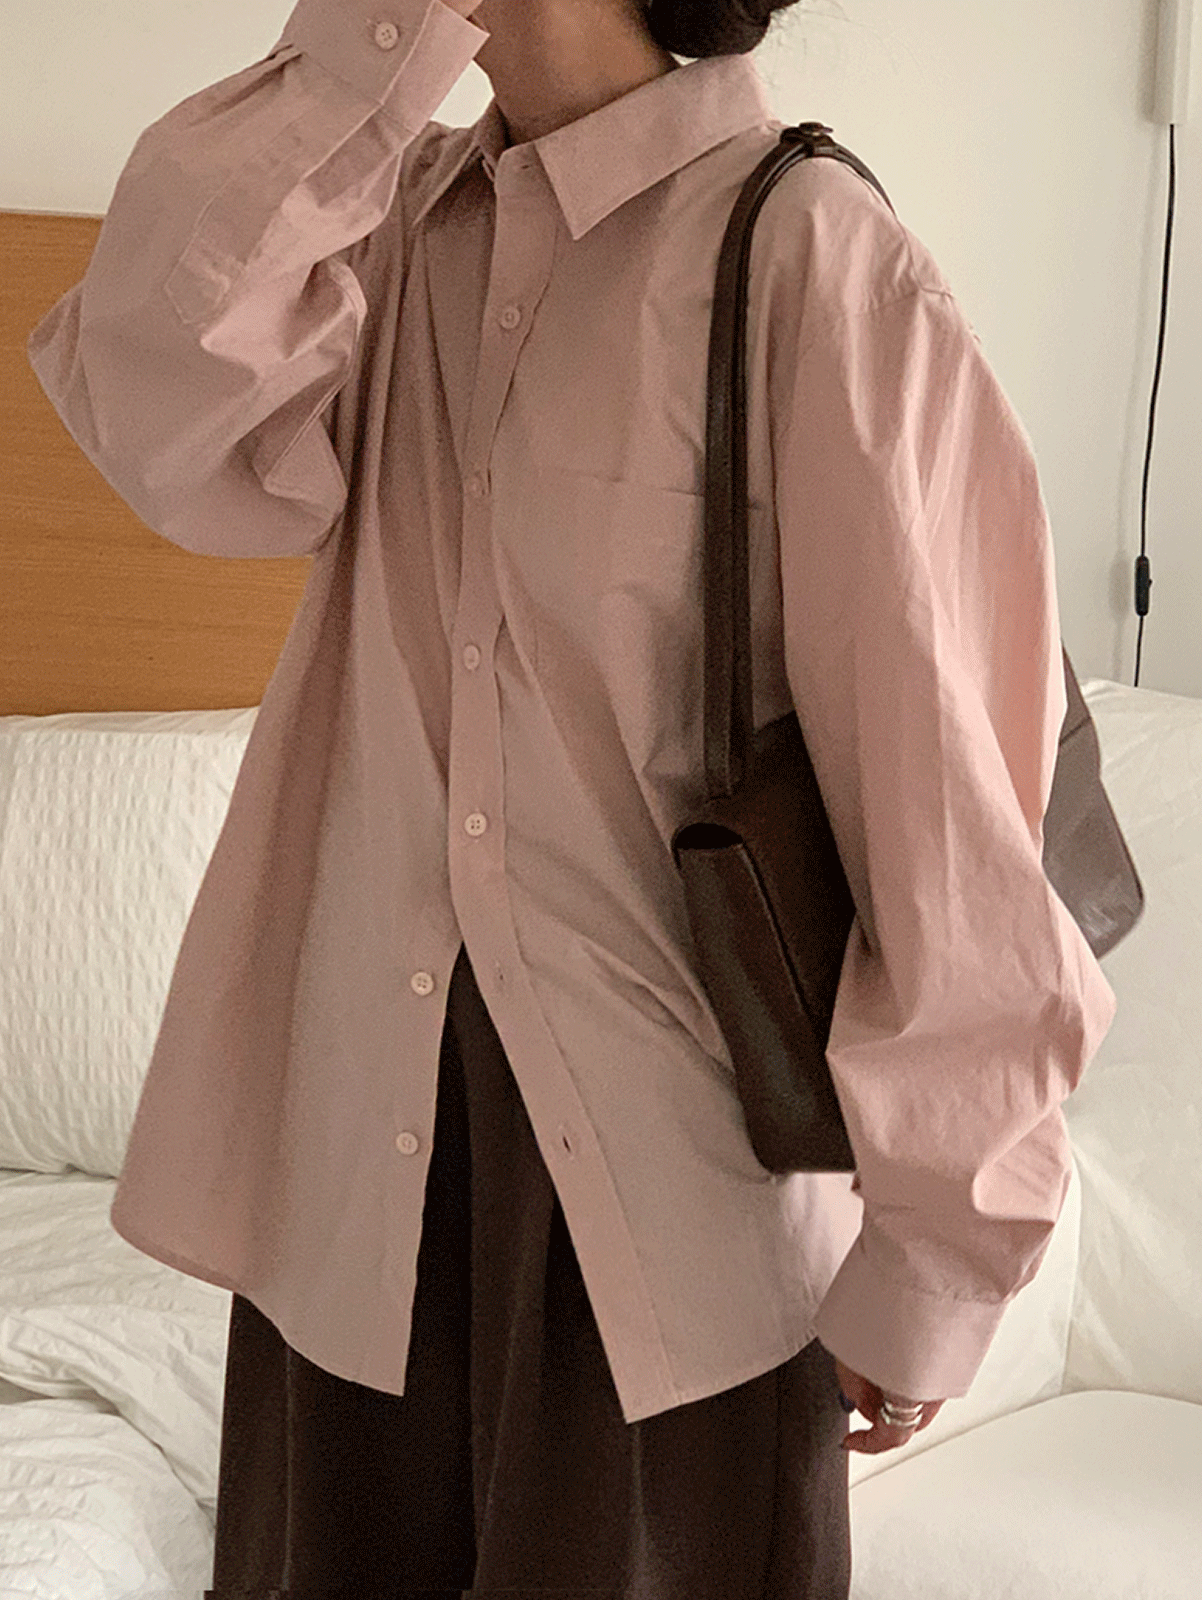 [당일발송] clean cotton shirts (8colors) 주문폭주! 그레이, 네이비, 소라, 차콜, 핑크, 화이트 당일발송